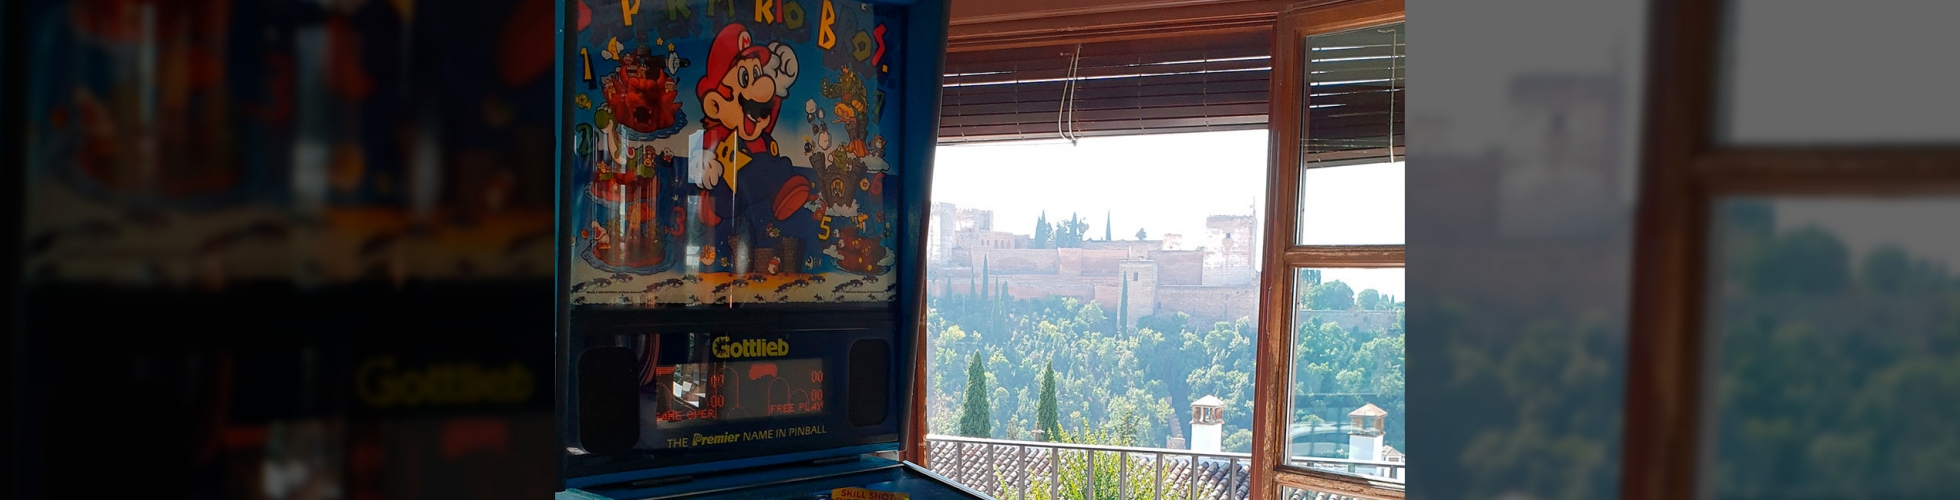 Alquiler de Pinball en Granada